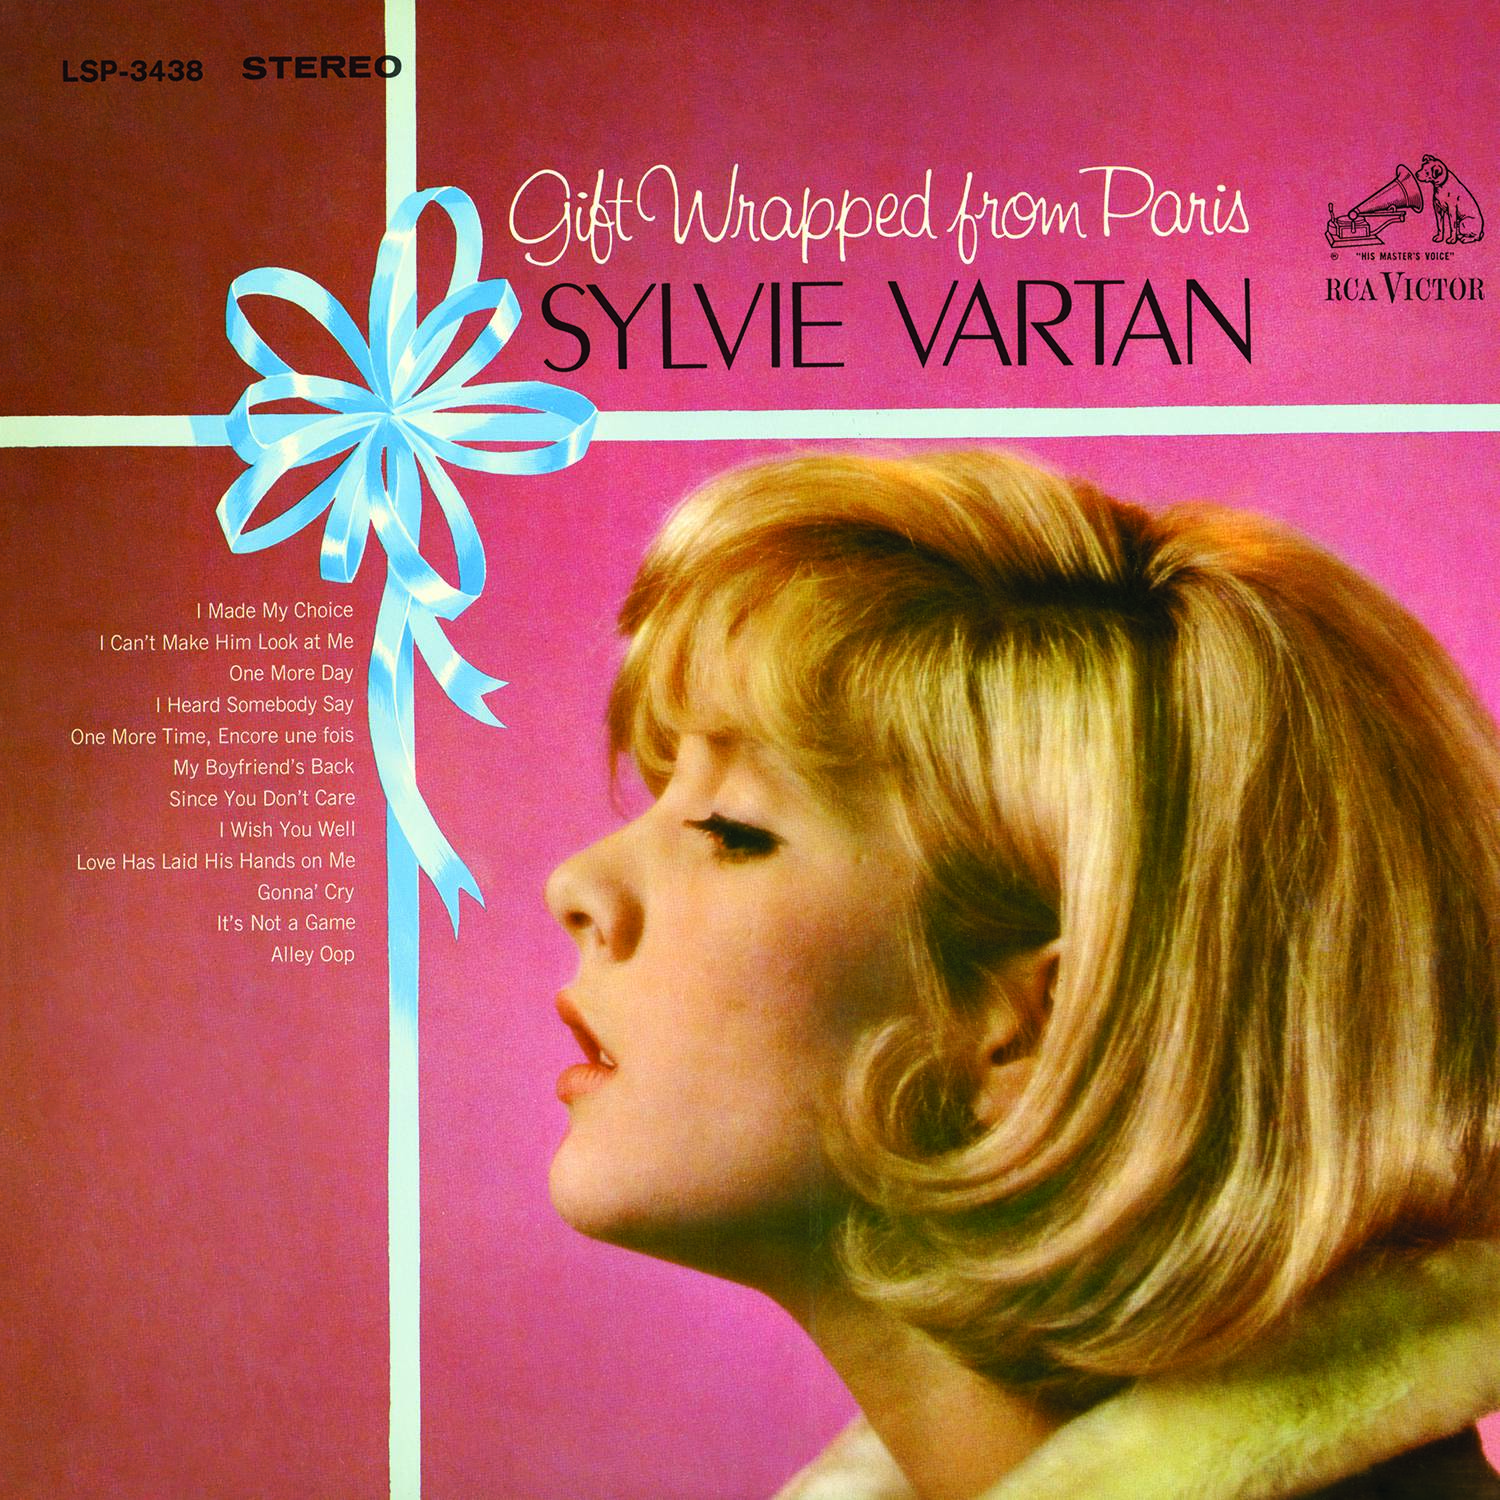 Sylvie Vartan - Gift Wrapped From Paris (1965/2015) [AcousticSounds FLAC 24bit/96kHz]